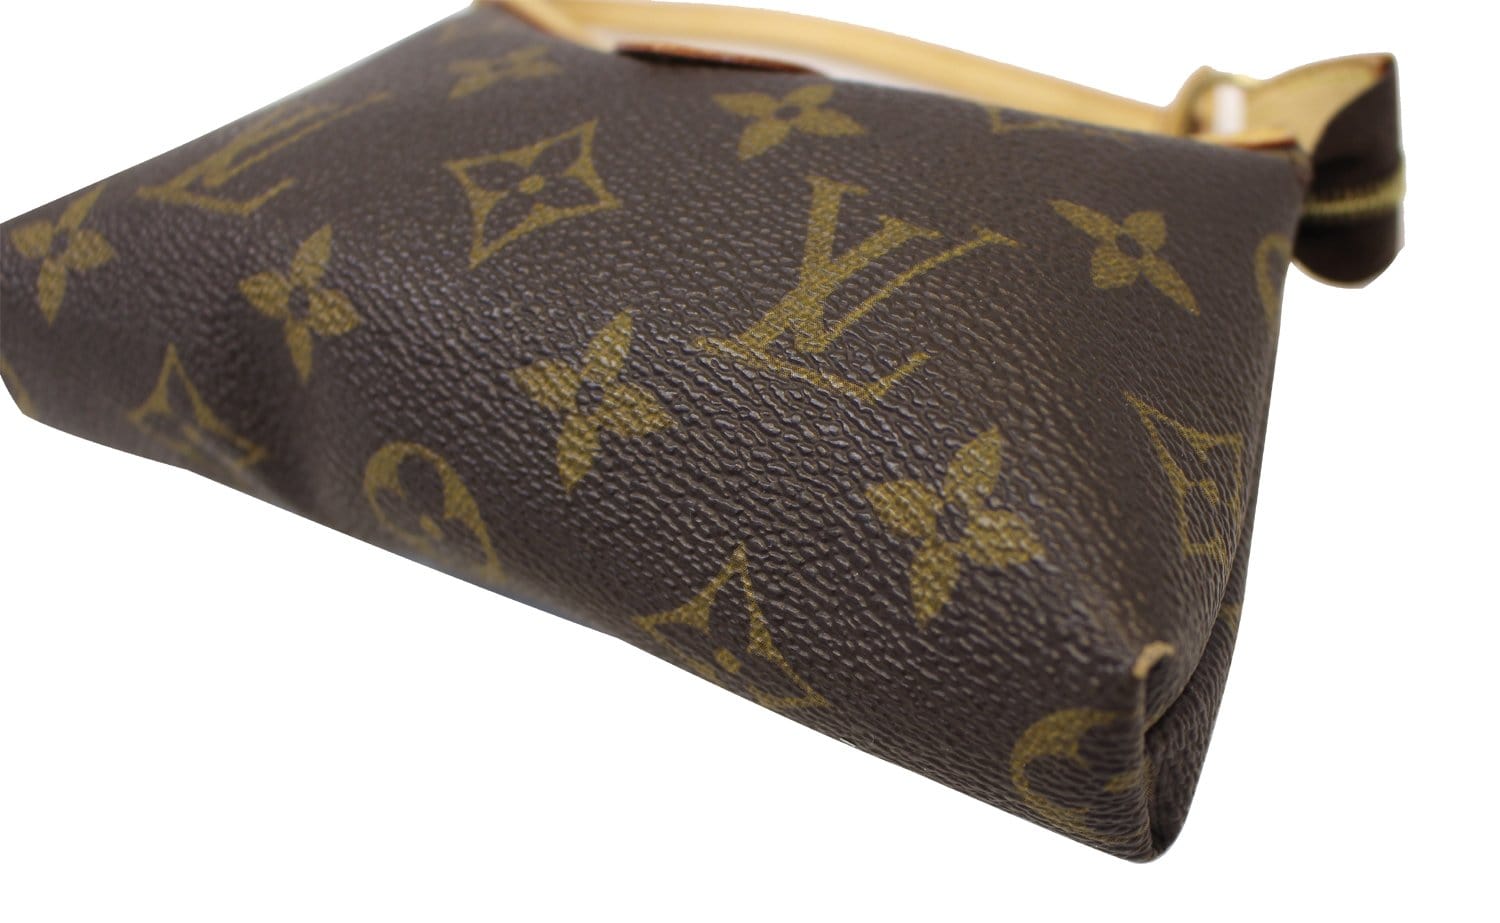 Louis Vuitton LV Sac Plat Monogram Customised Disney Bambi Deer Limited  Edition Mini sac plat